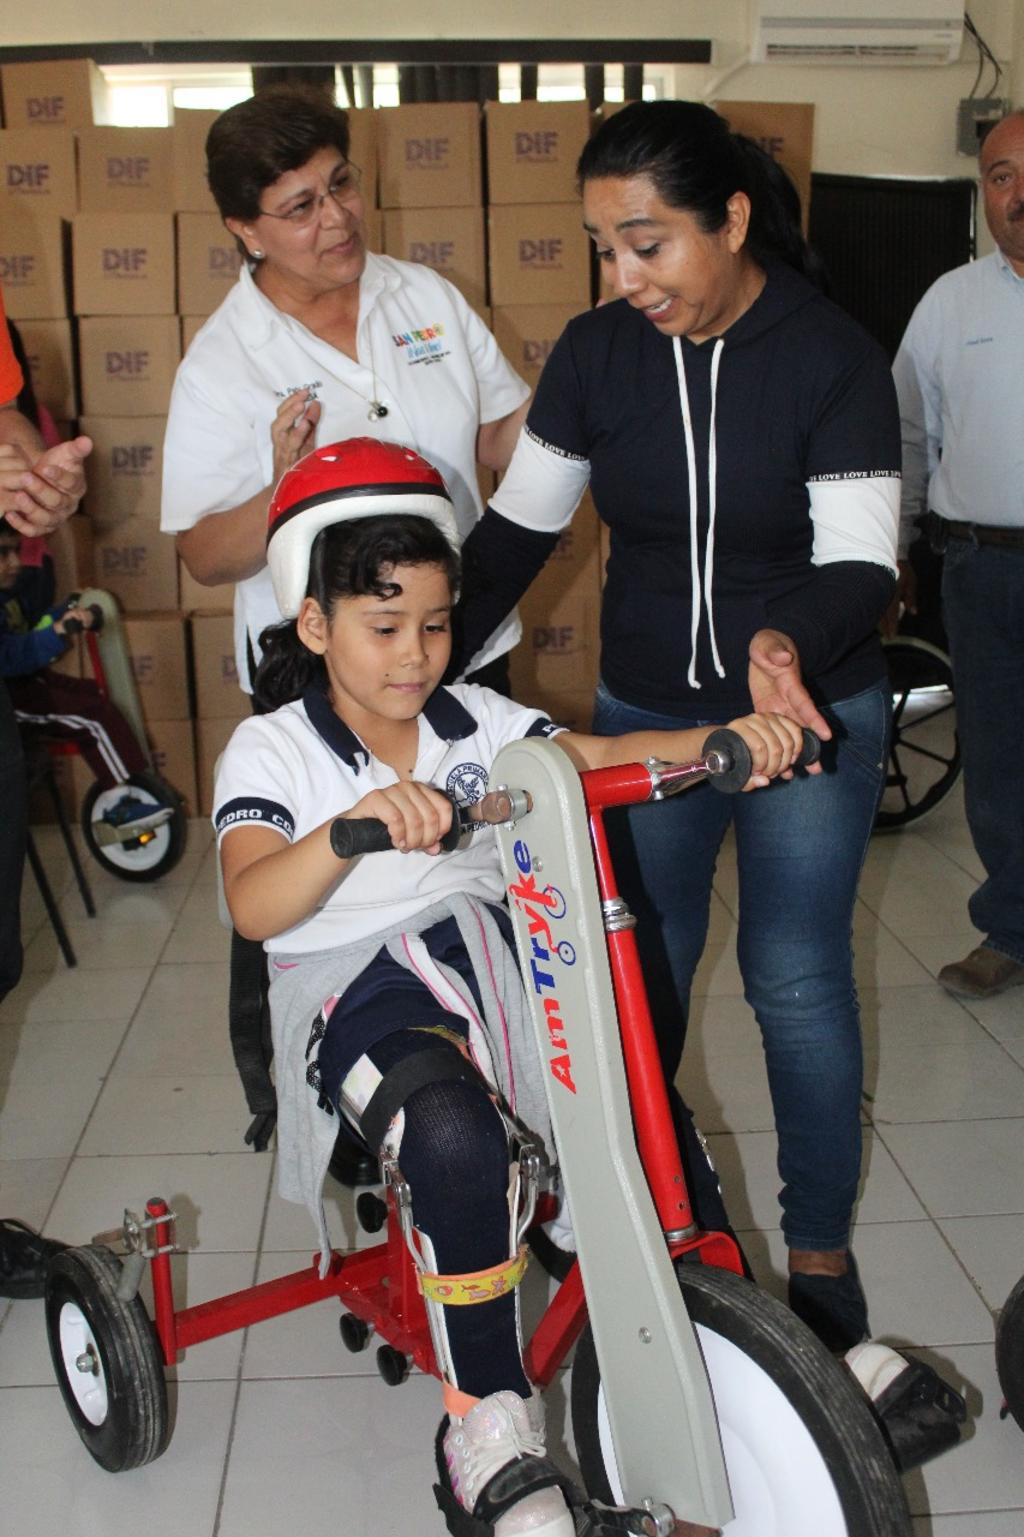 Donaron cuatro sillas de ruedas para niños y cuatro carritos para niños con discapacidad: siete niños y un adulto, originarios de los ejidos San Lorenzo, Luchana, Santa Eulalia y del área urbana fueron los beneficiados. (EL SIGLO DE TORREÓN)